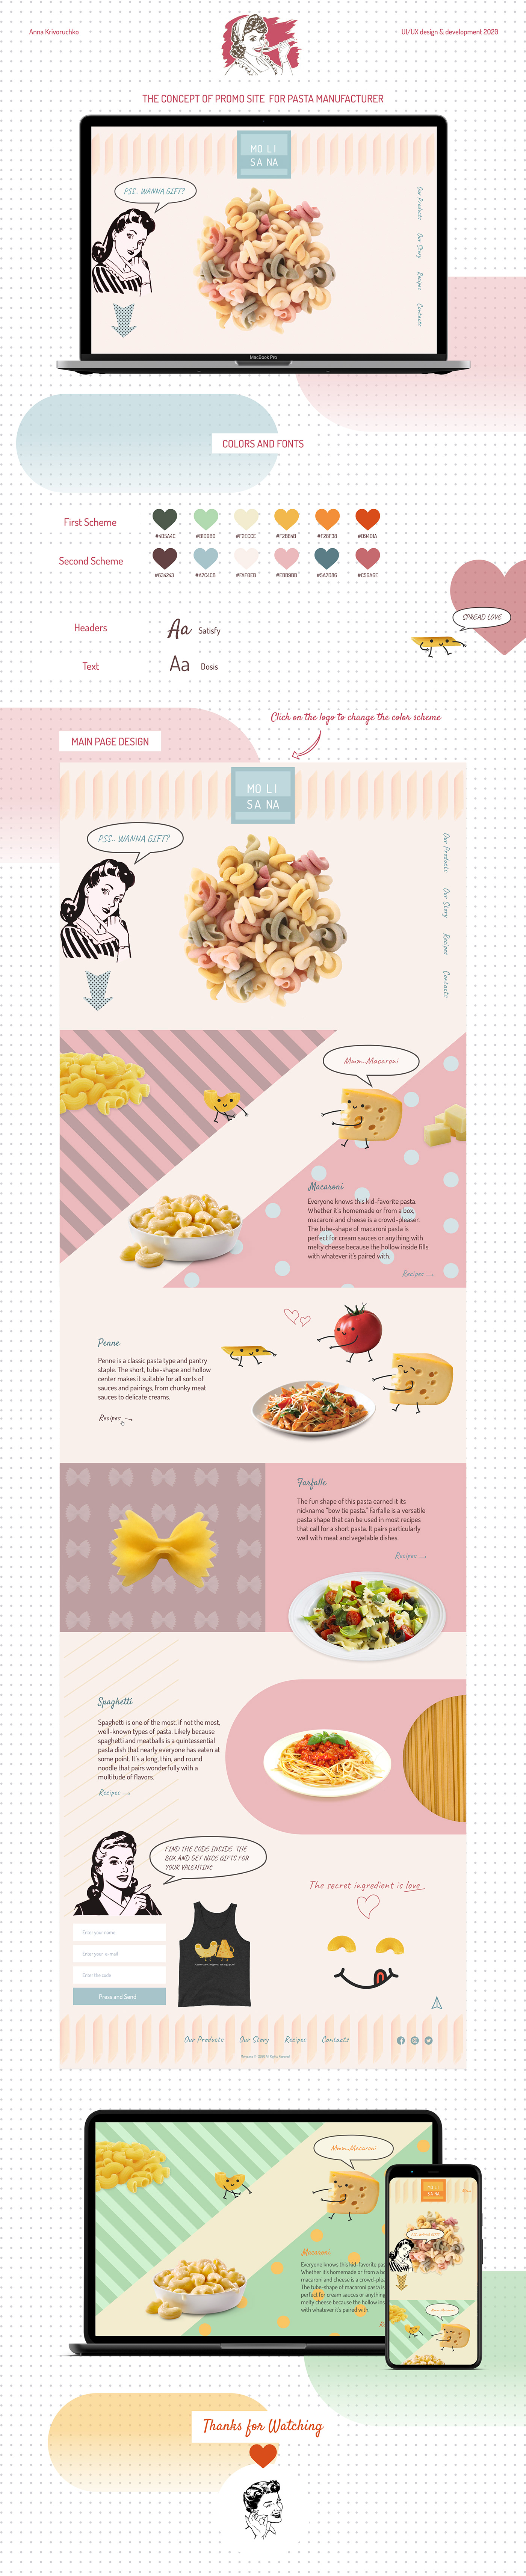 Adaptive developmet Food  Pasta promo promo site ui design Web Web Design  Website